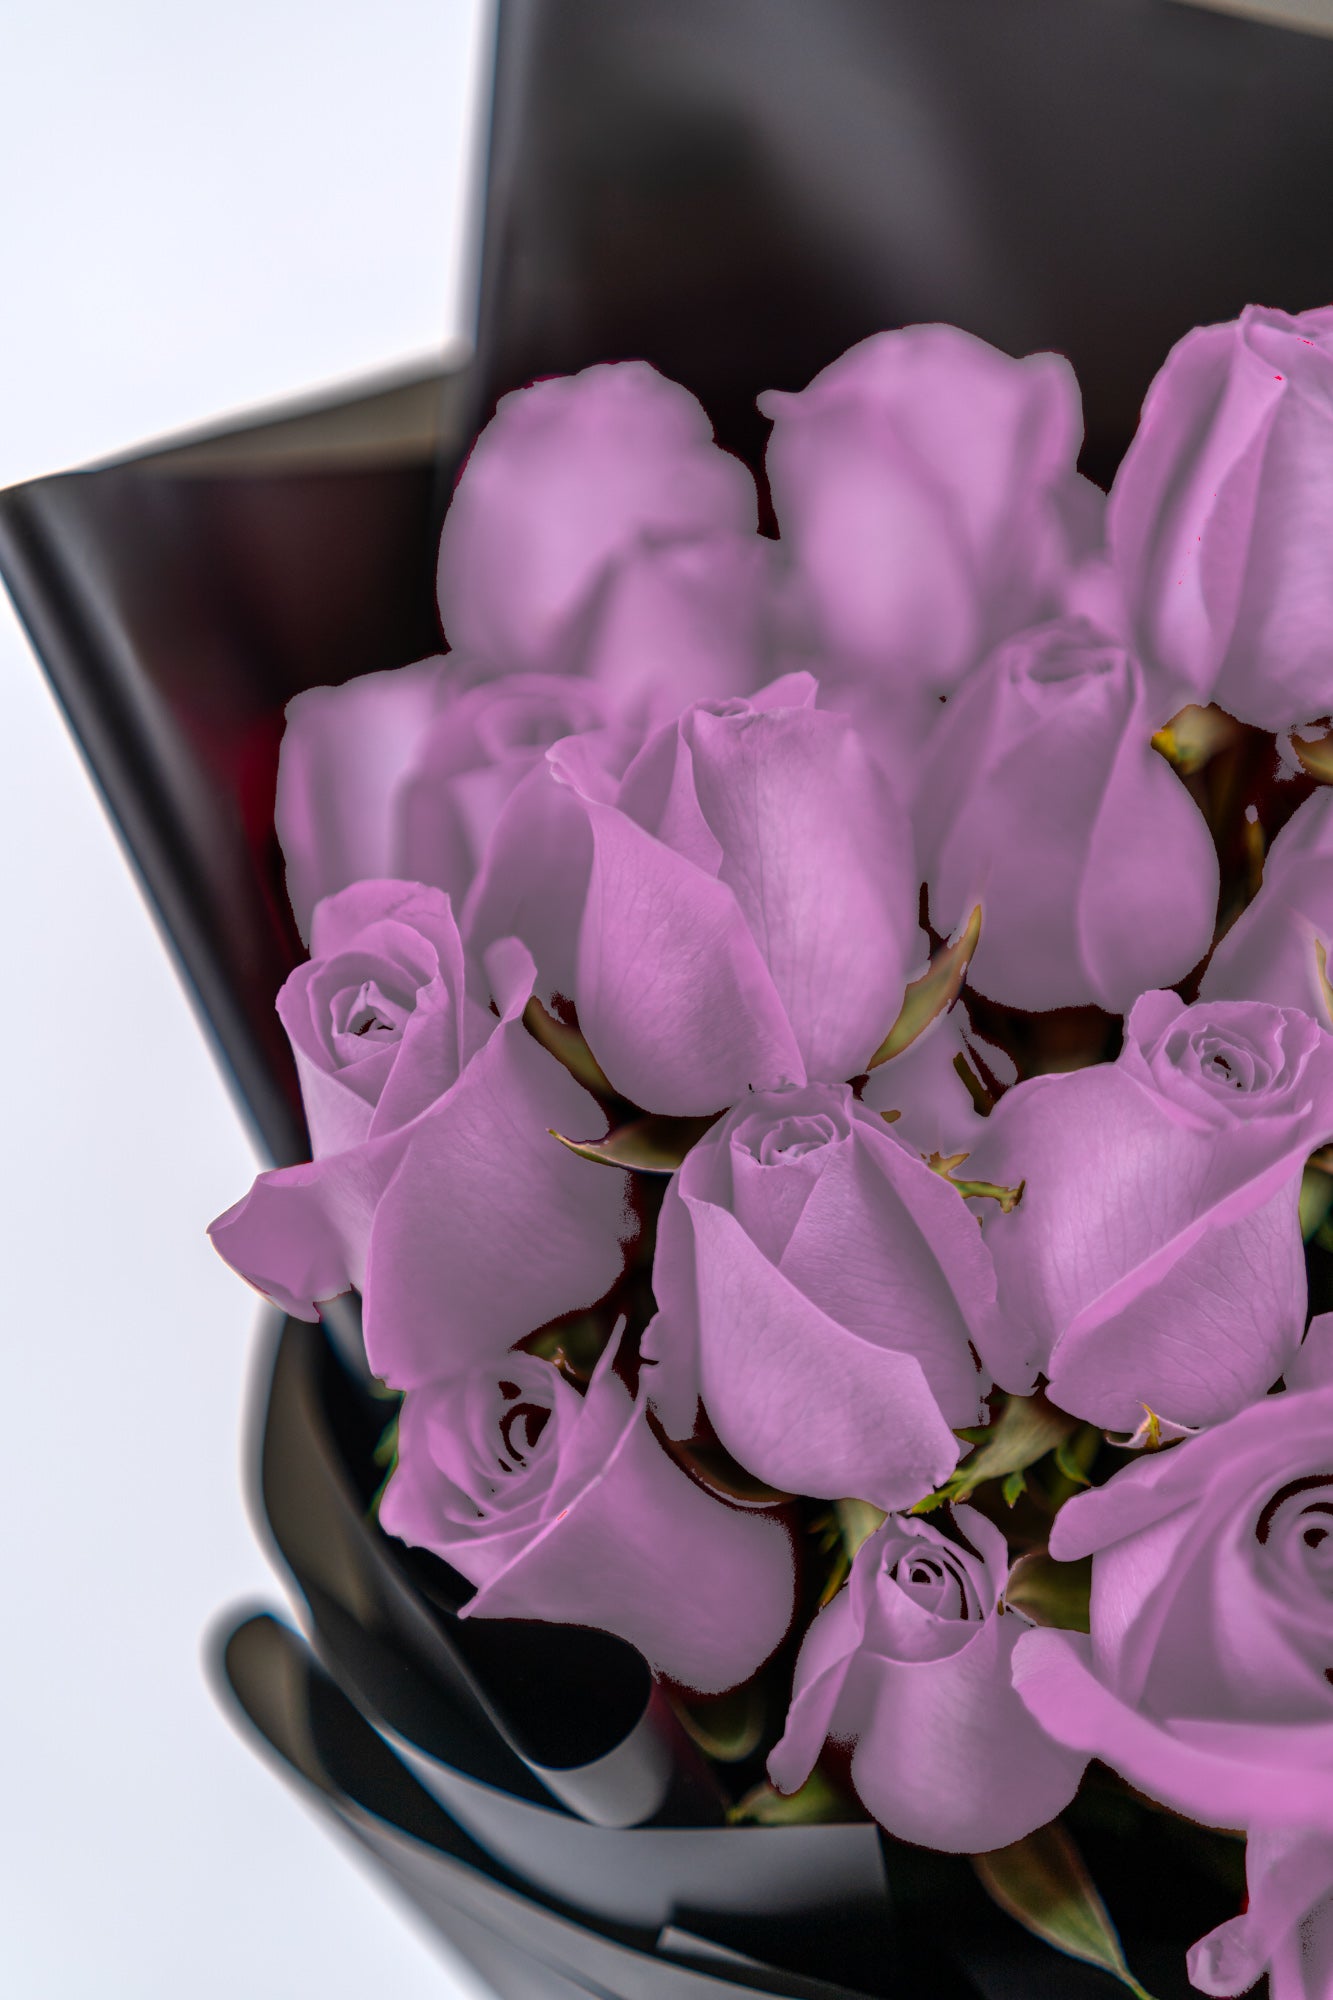 33支玫瑰 (紫色)